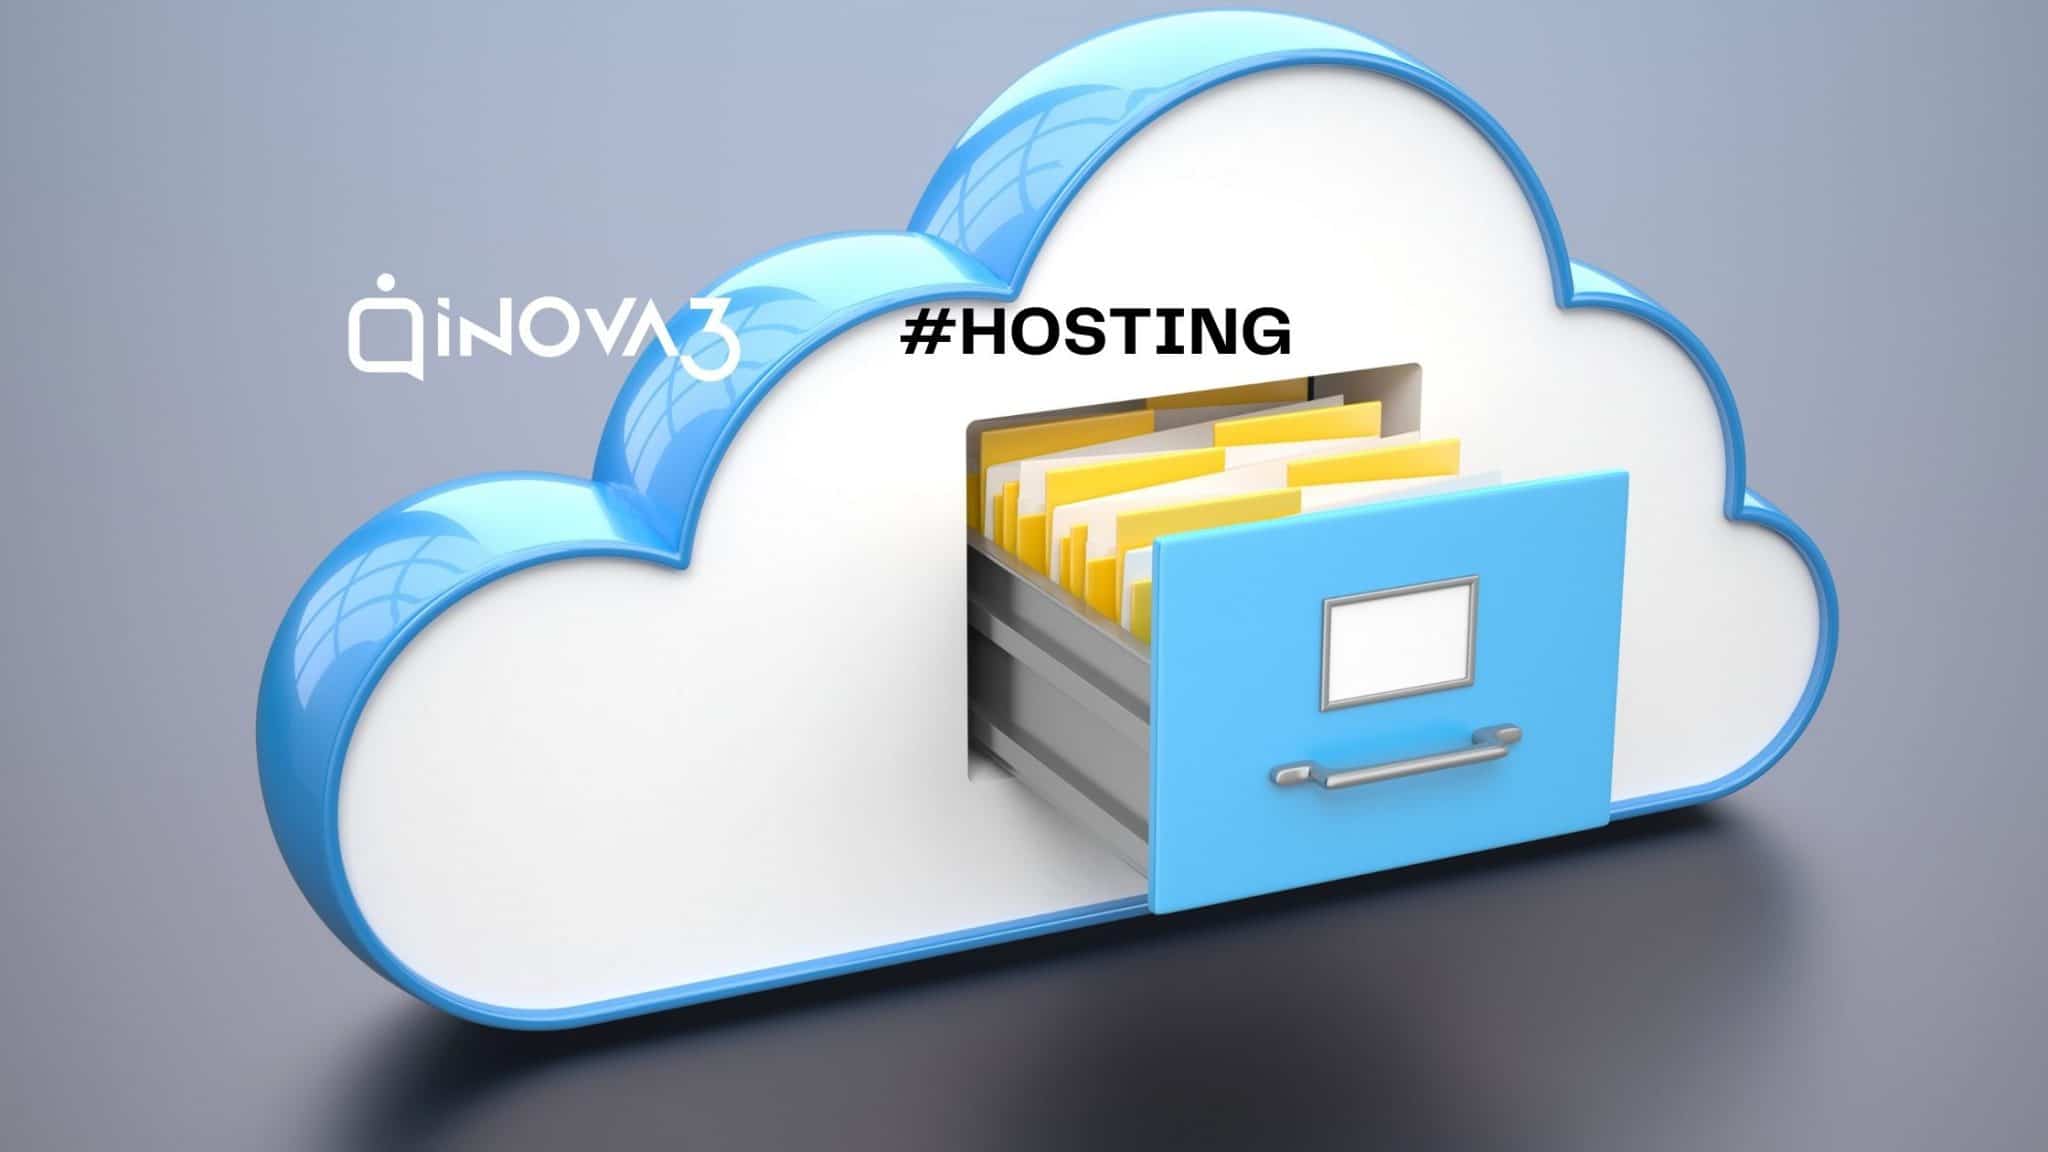 Servicio de hosting INOVA3.net